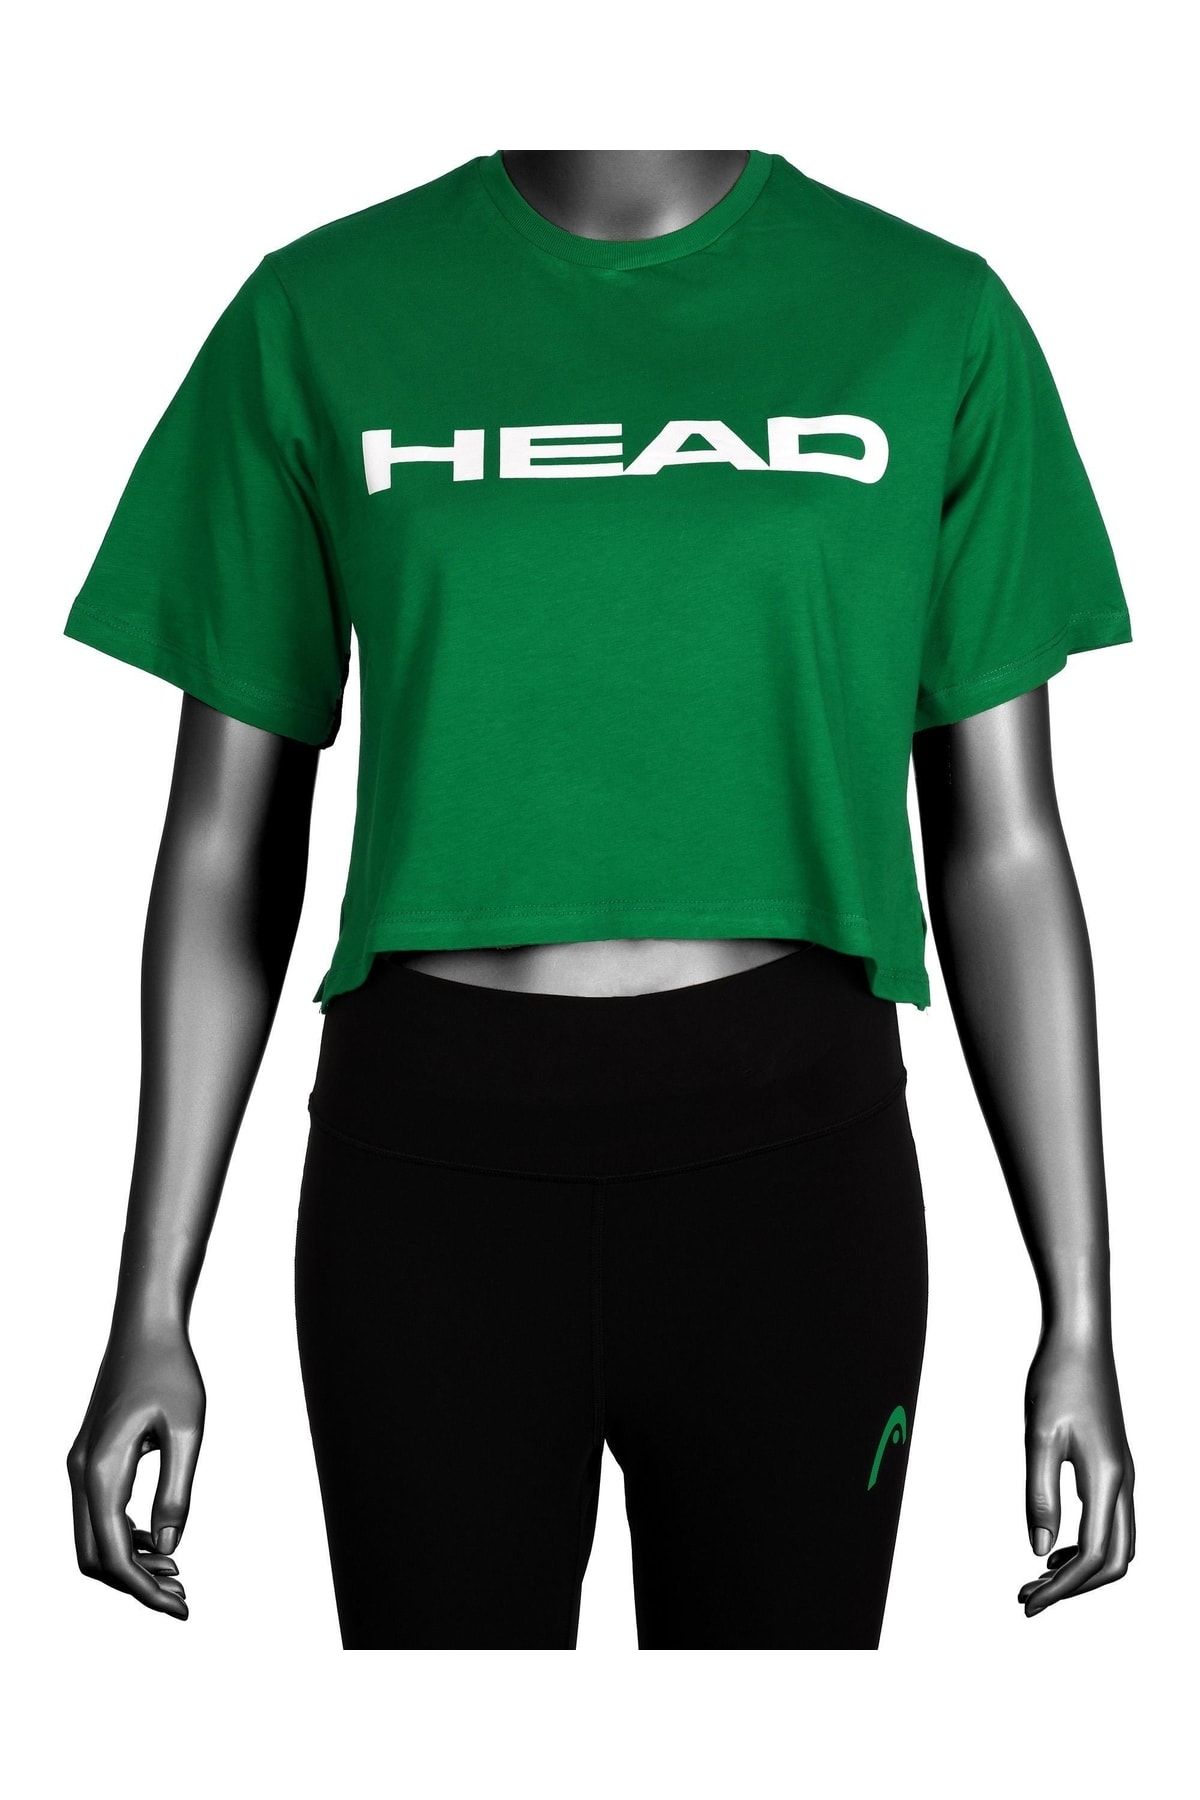 Head Kadın Koyu Yeşil Logo Baskılı Pamuklu Bisiklet Yaka Spor Şık Croptop Spor T-shirt Tenis Tişört